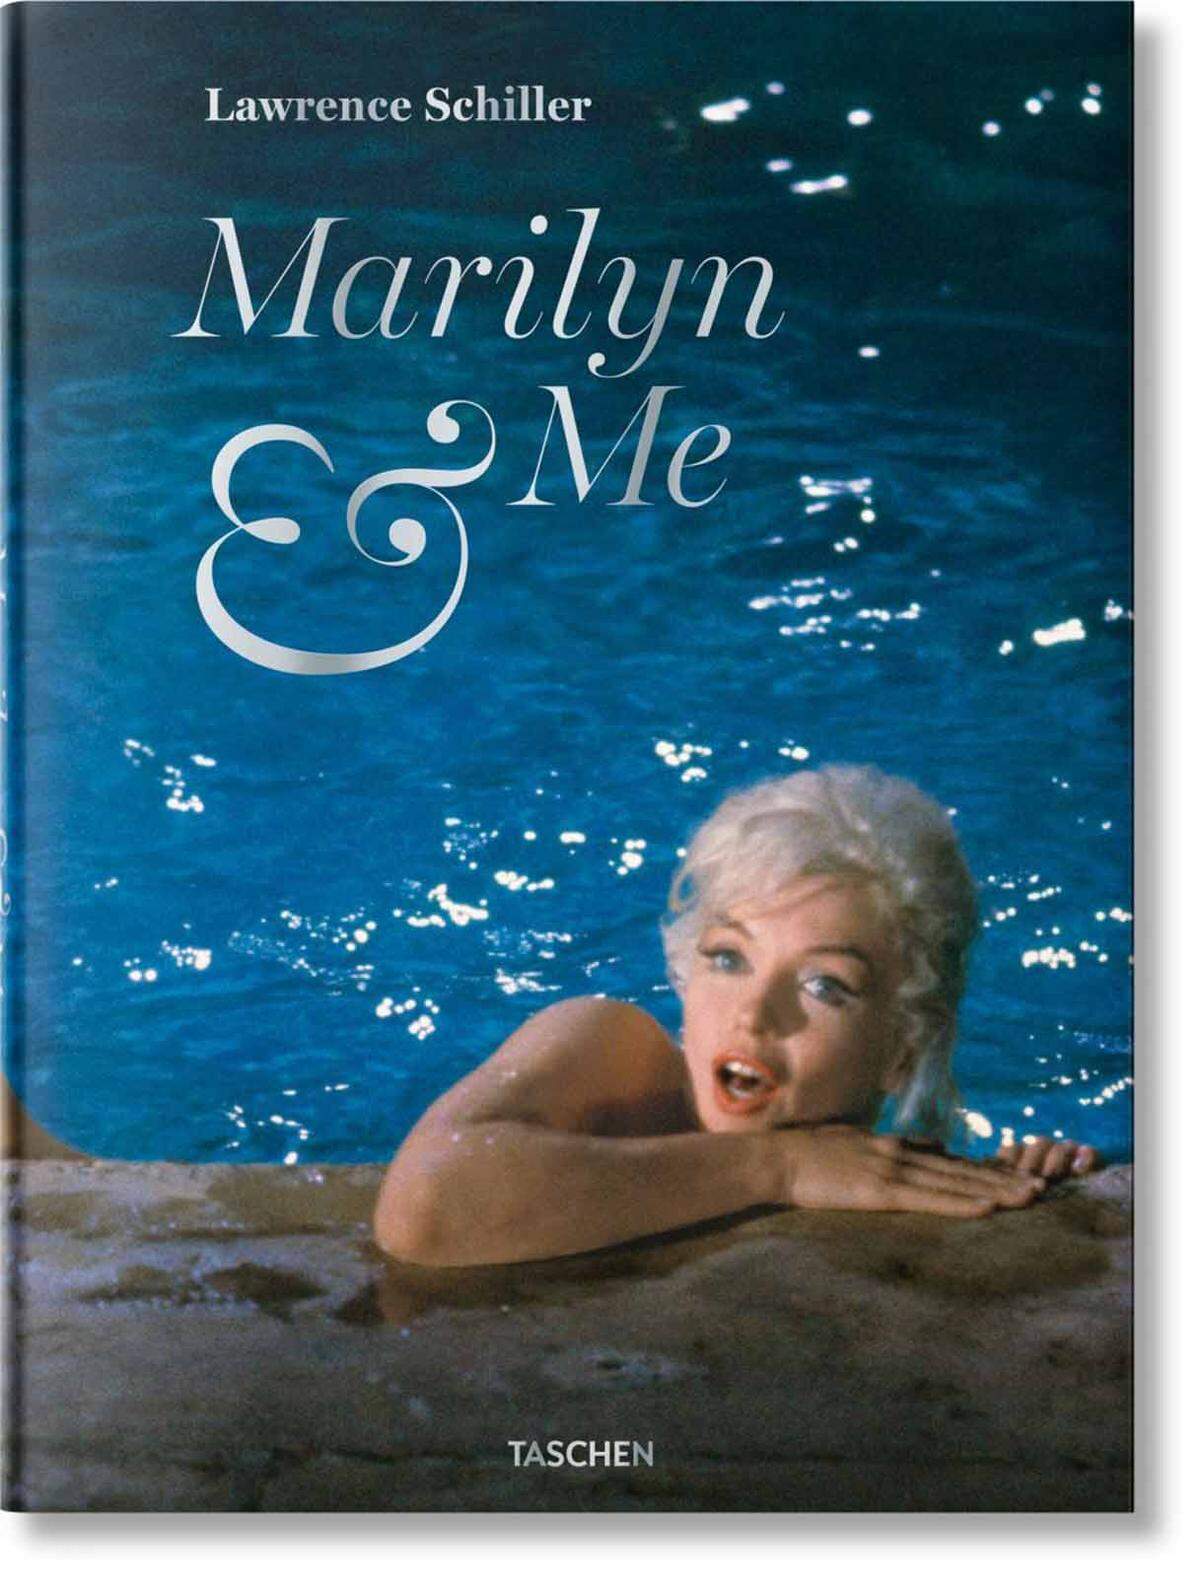 Das Glanzstück sind Bilder einer nackt im Pool schwimmenden bzw. am Beckenrand sitzenden Marilyn - mit viel Haut, aber trotzdem alles andere als das, was man heute als freizügig bezeichnet. Die Dreharbeiten stockten gerade, das Studio wollte die wohl ewig unterschätzte Schauspielerin loswerden, die Monroe landete aber mit den Bildern einen unglaublichen PR-Coup und war zurück im Geschäft.